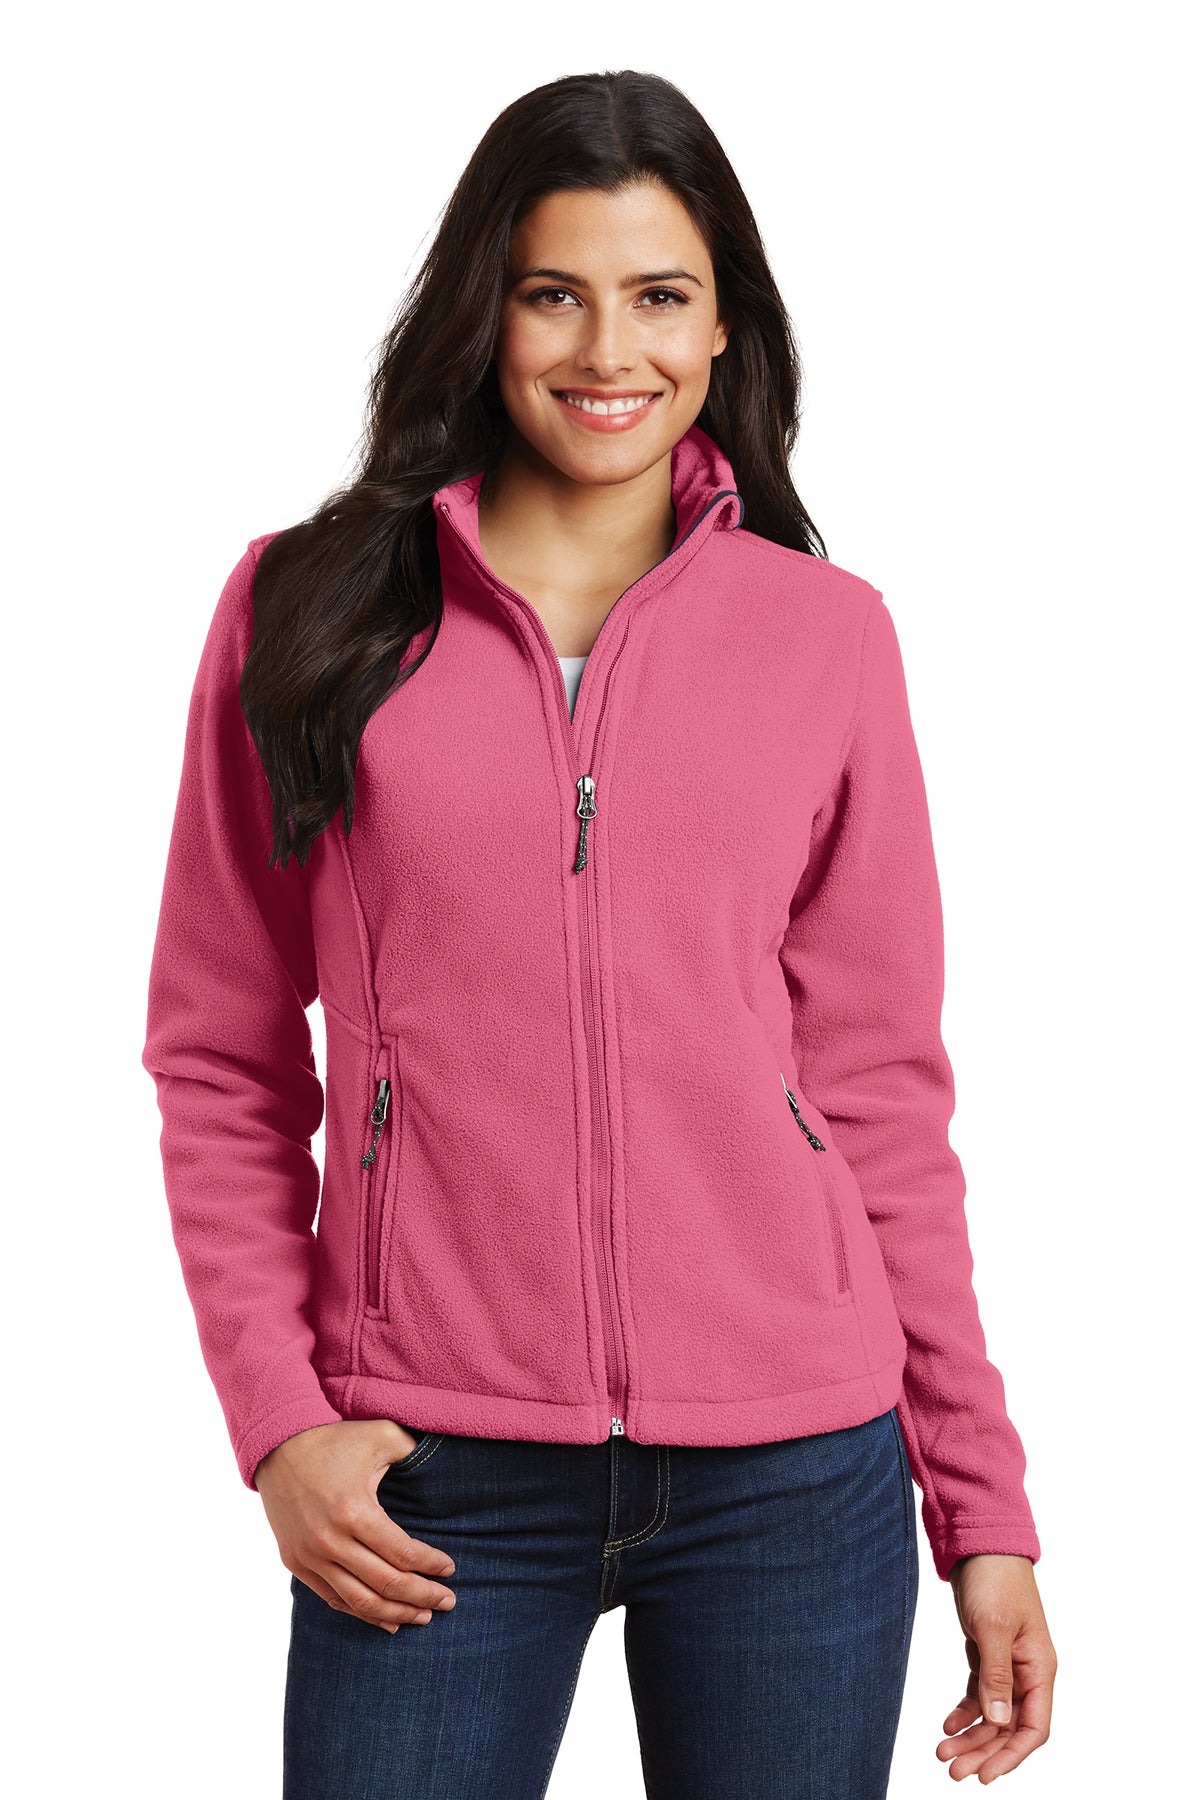 L217 Women's Fleece Jacket Pink Blossom